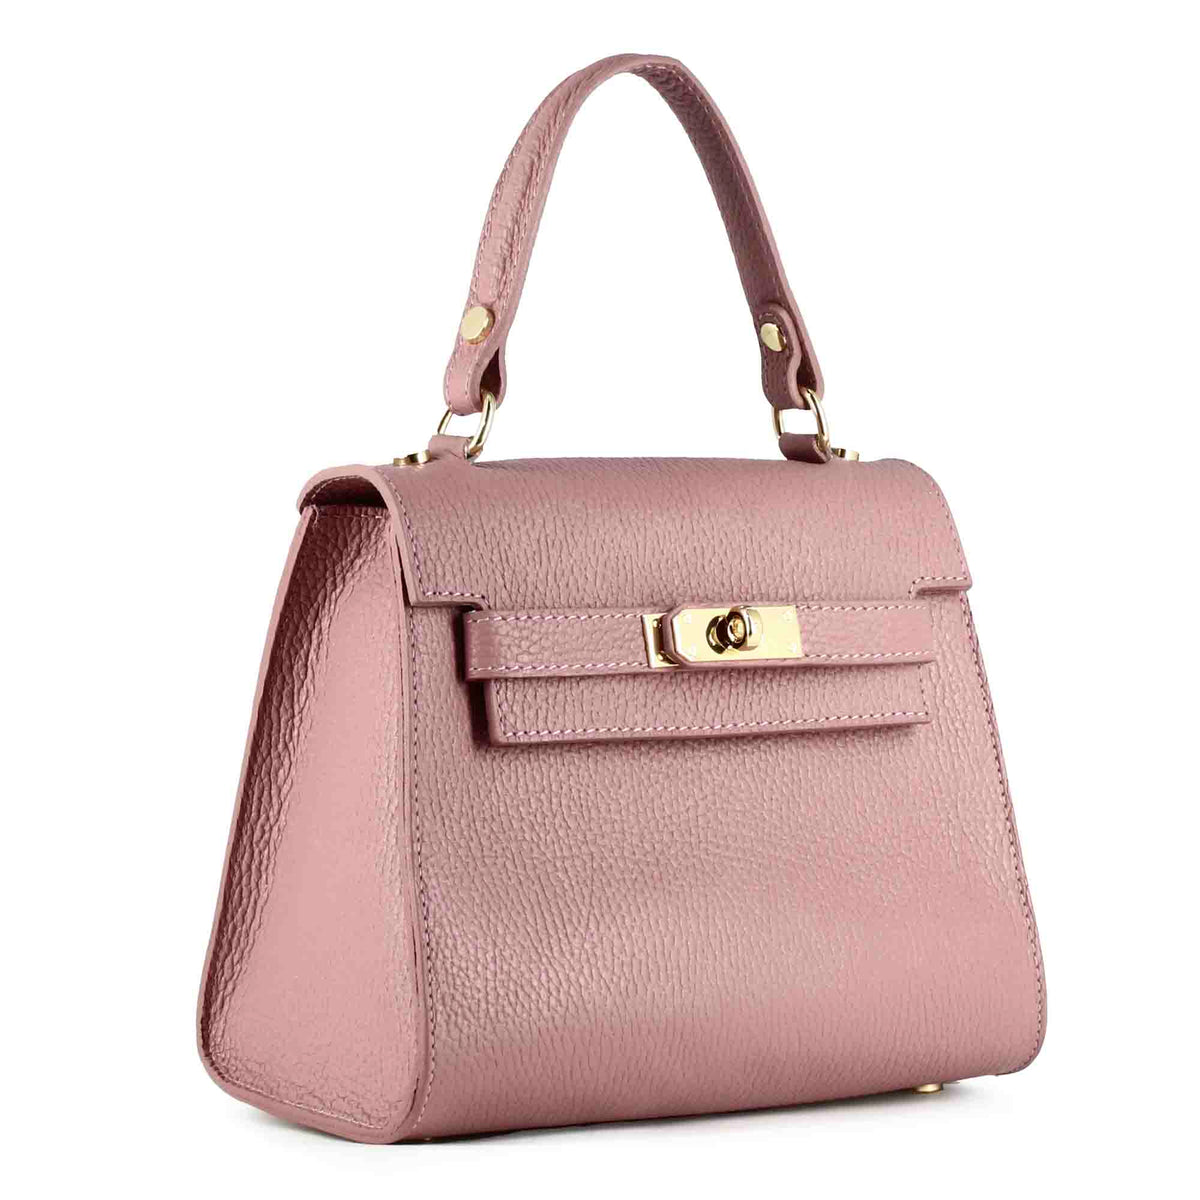 Lady K women's handbag in pink leather